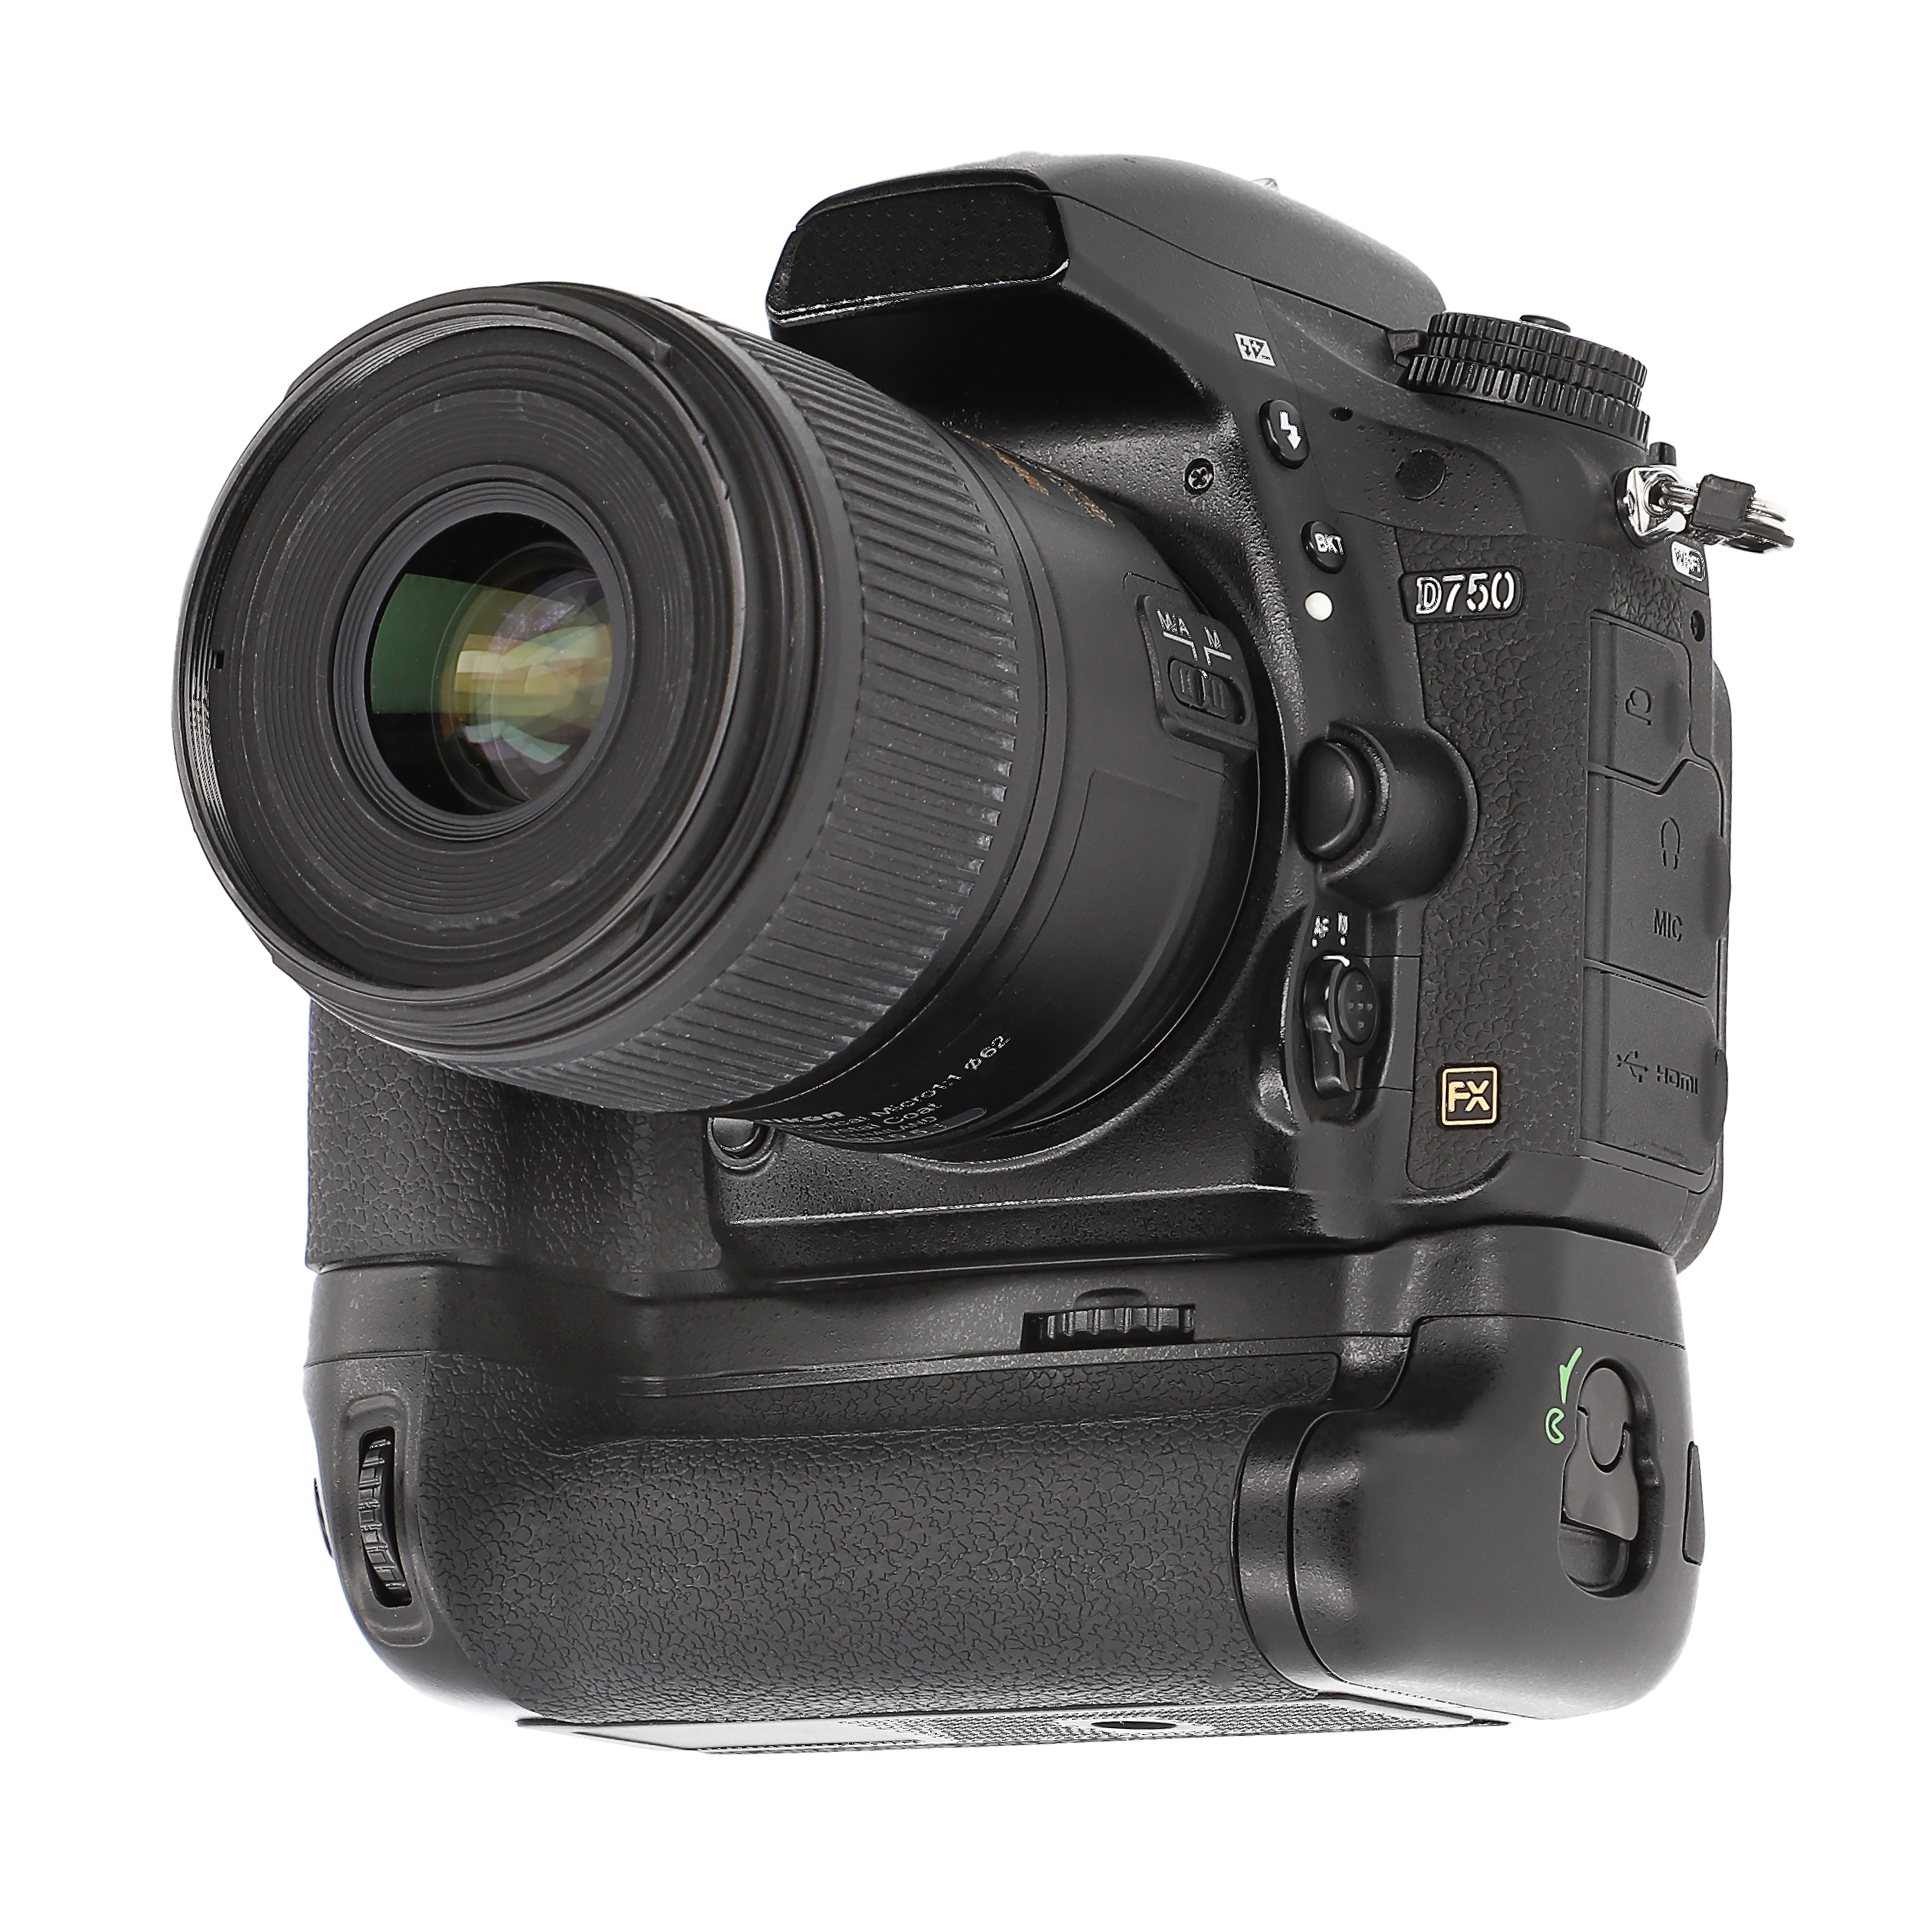 ayex Batteriegriff für Nikon D750 Ersatz für MB-D16 Akkugriff optimal zum fotografieren im Hochformat